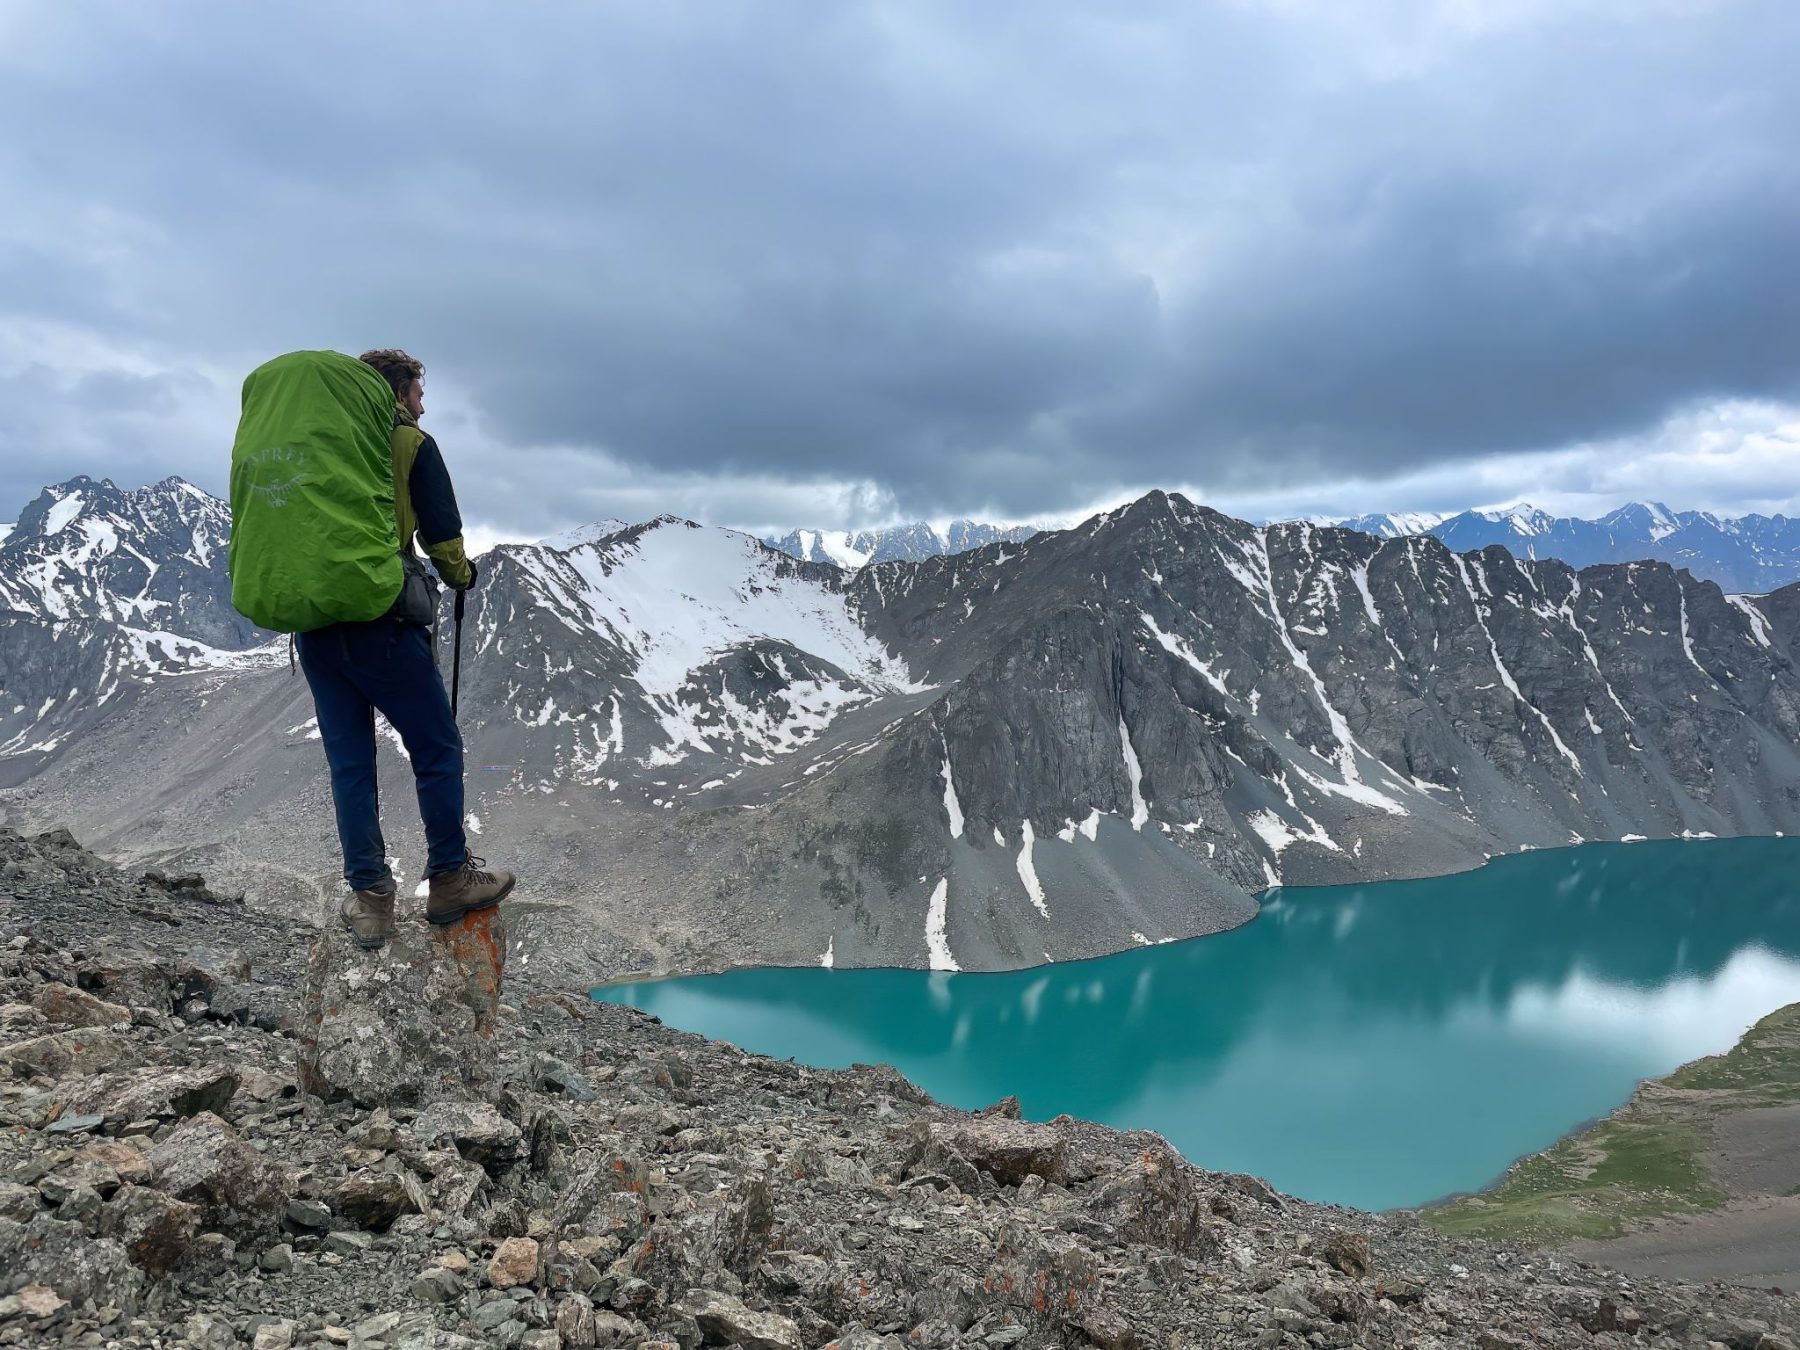 Hiken in Kirgizië met een uitzicht over een turquoise meer